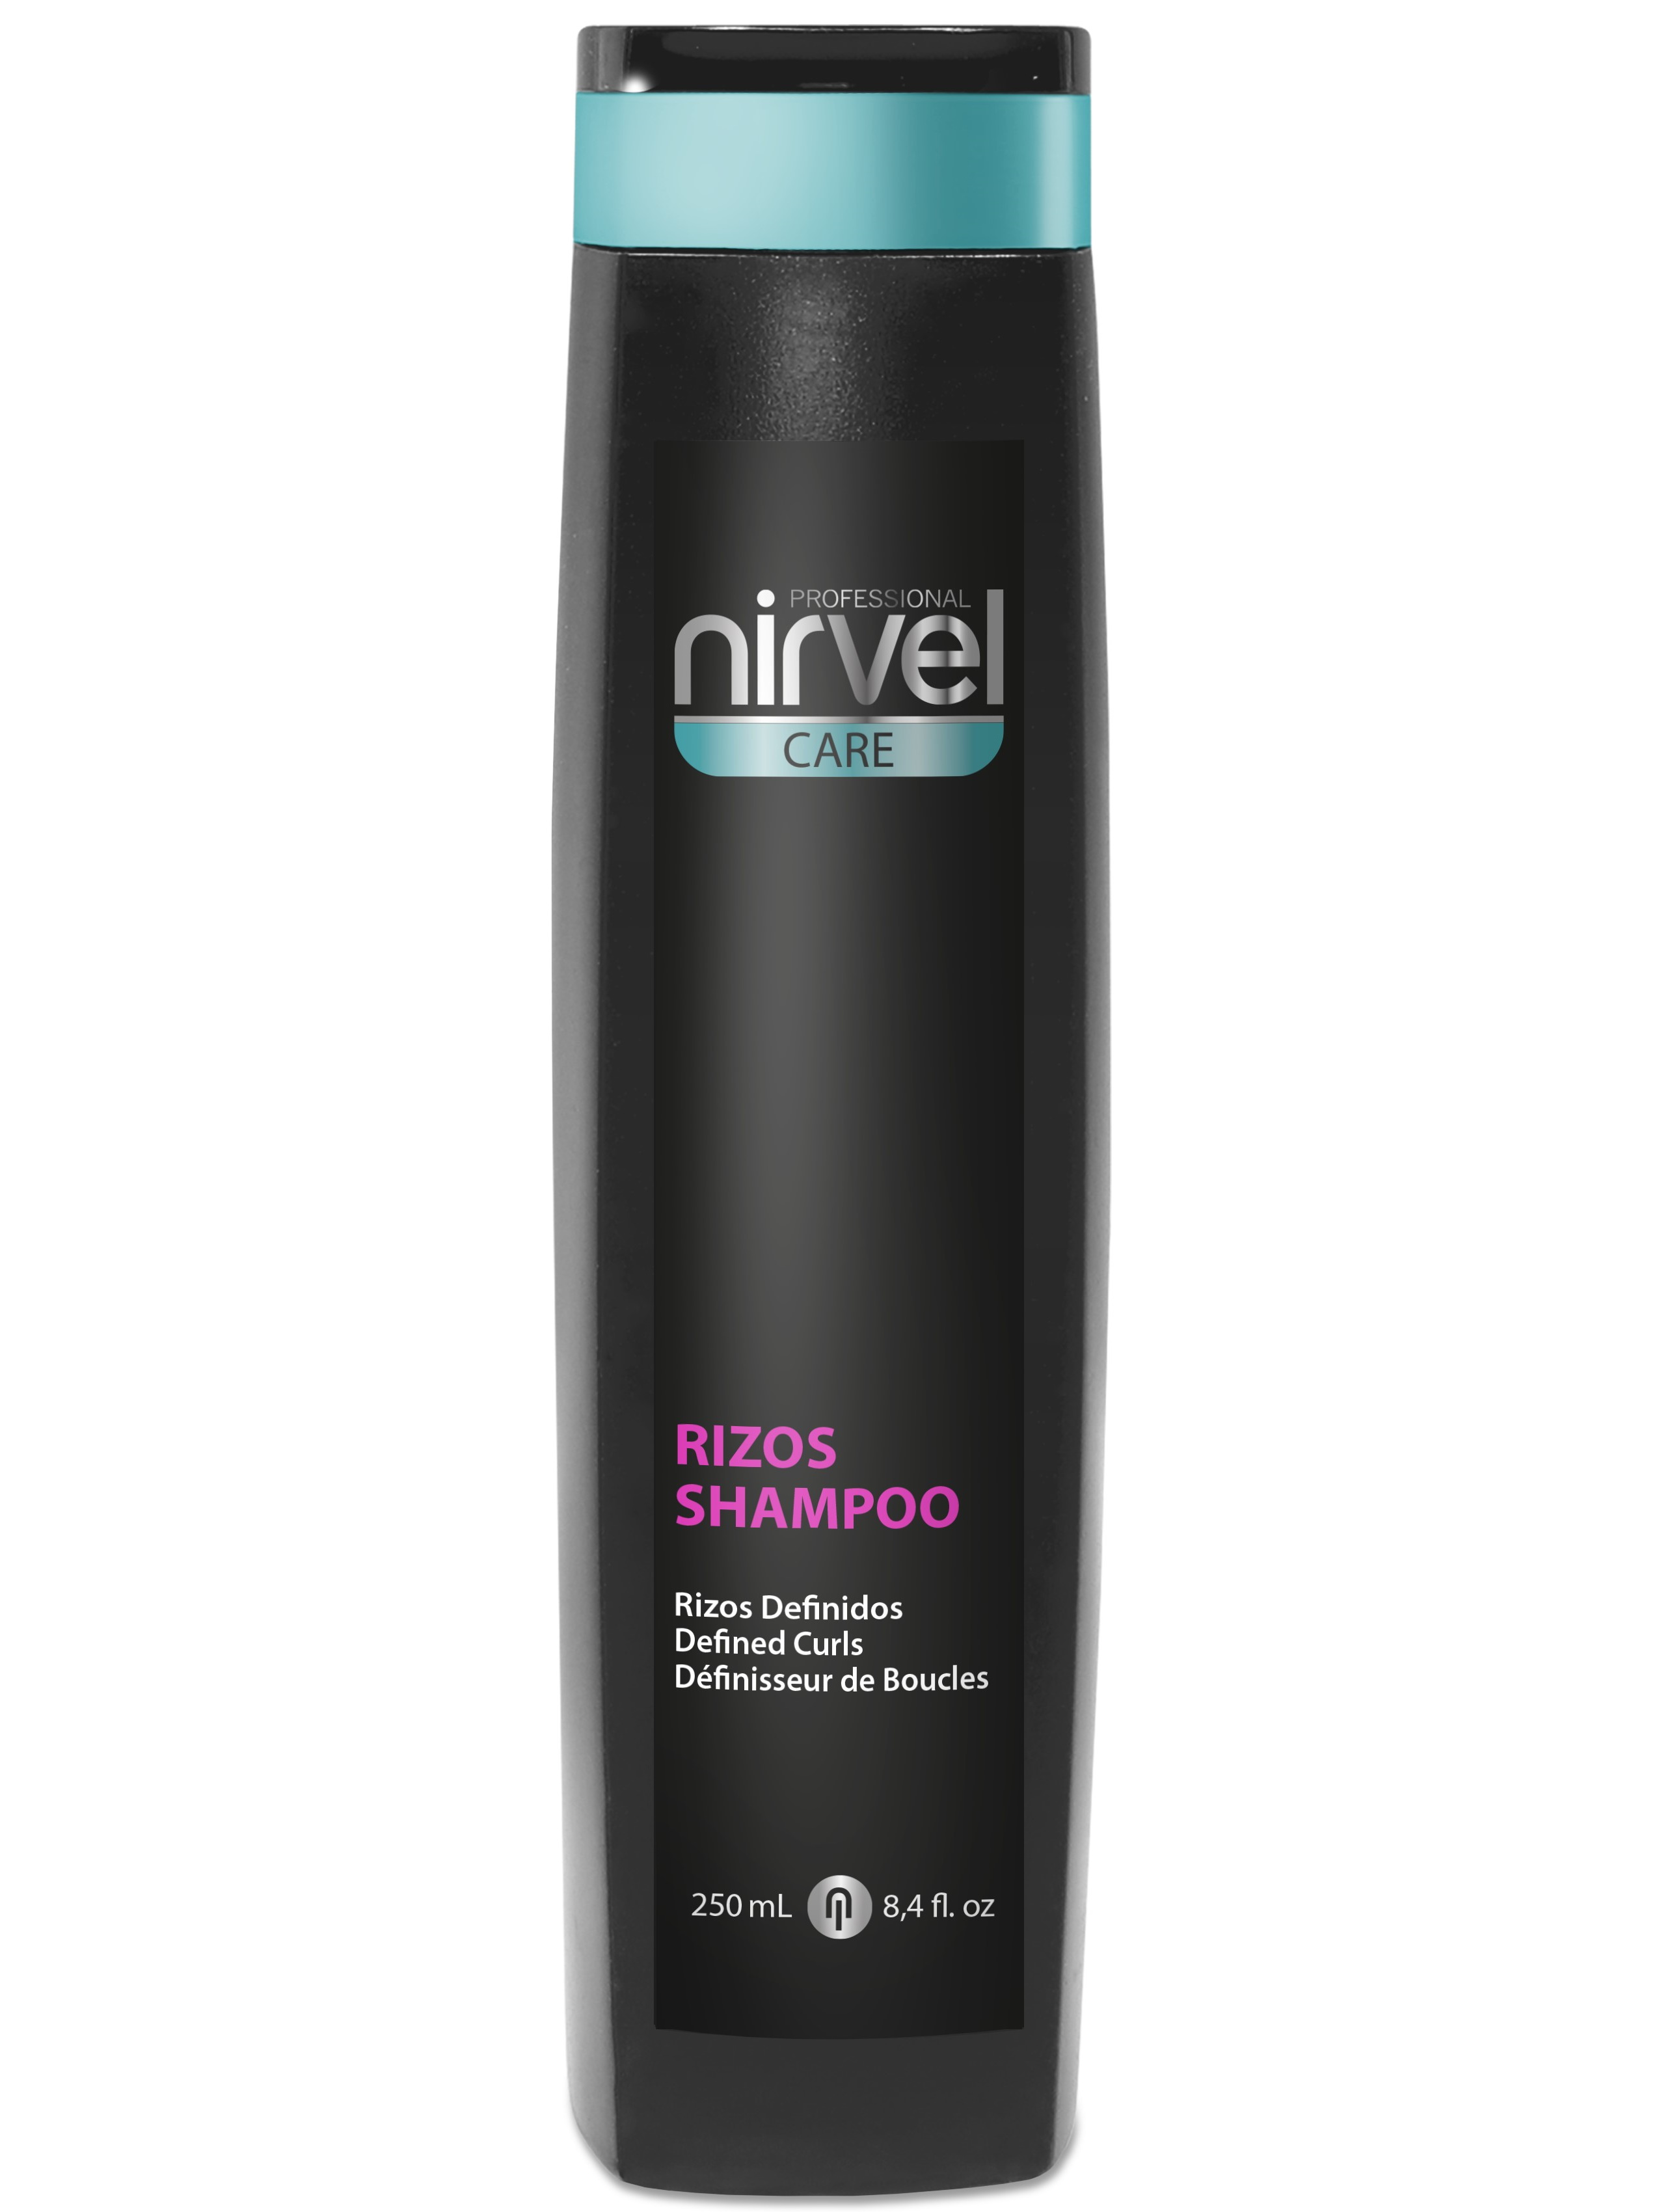 Шампунь NIRVEL PROFESSIONAL CARE для вьющихся волос rizos 250 мл шампунь дом природы кокосовый 250 г